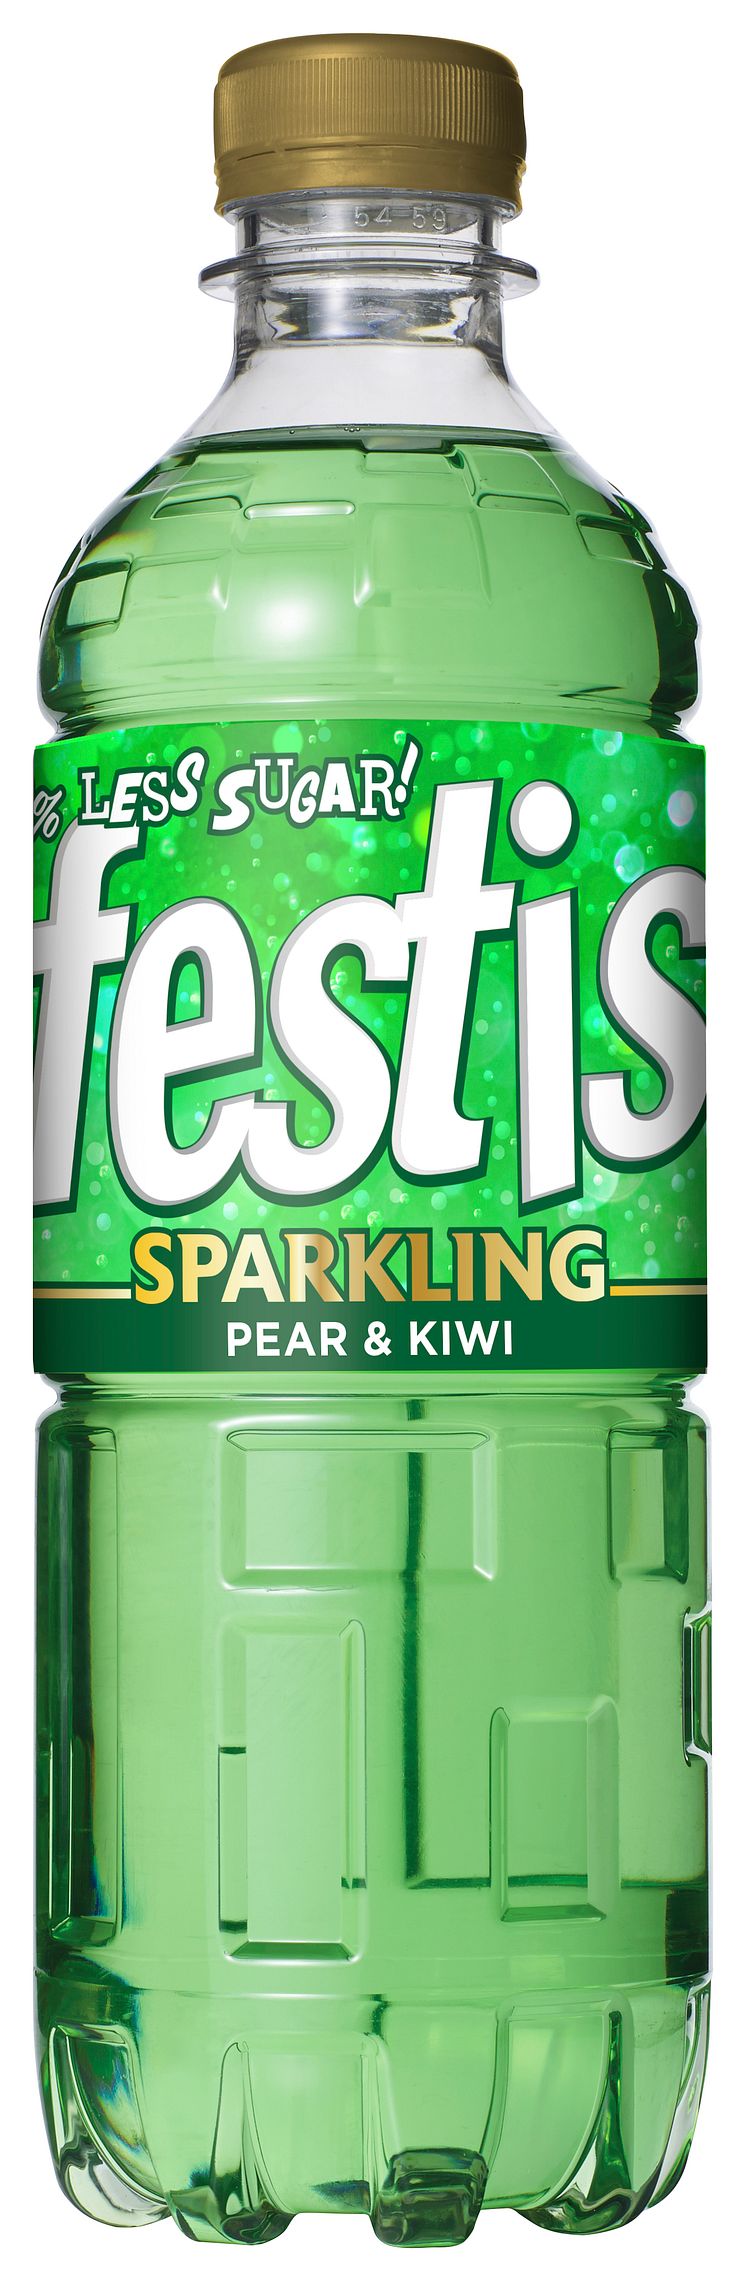 Festis Sparkling Pear Kiwi